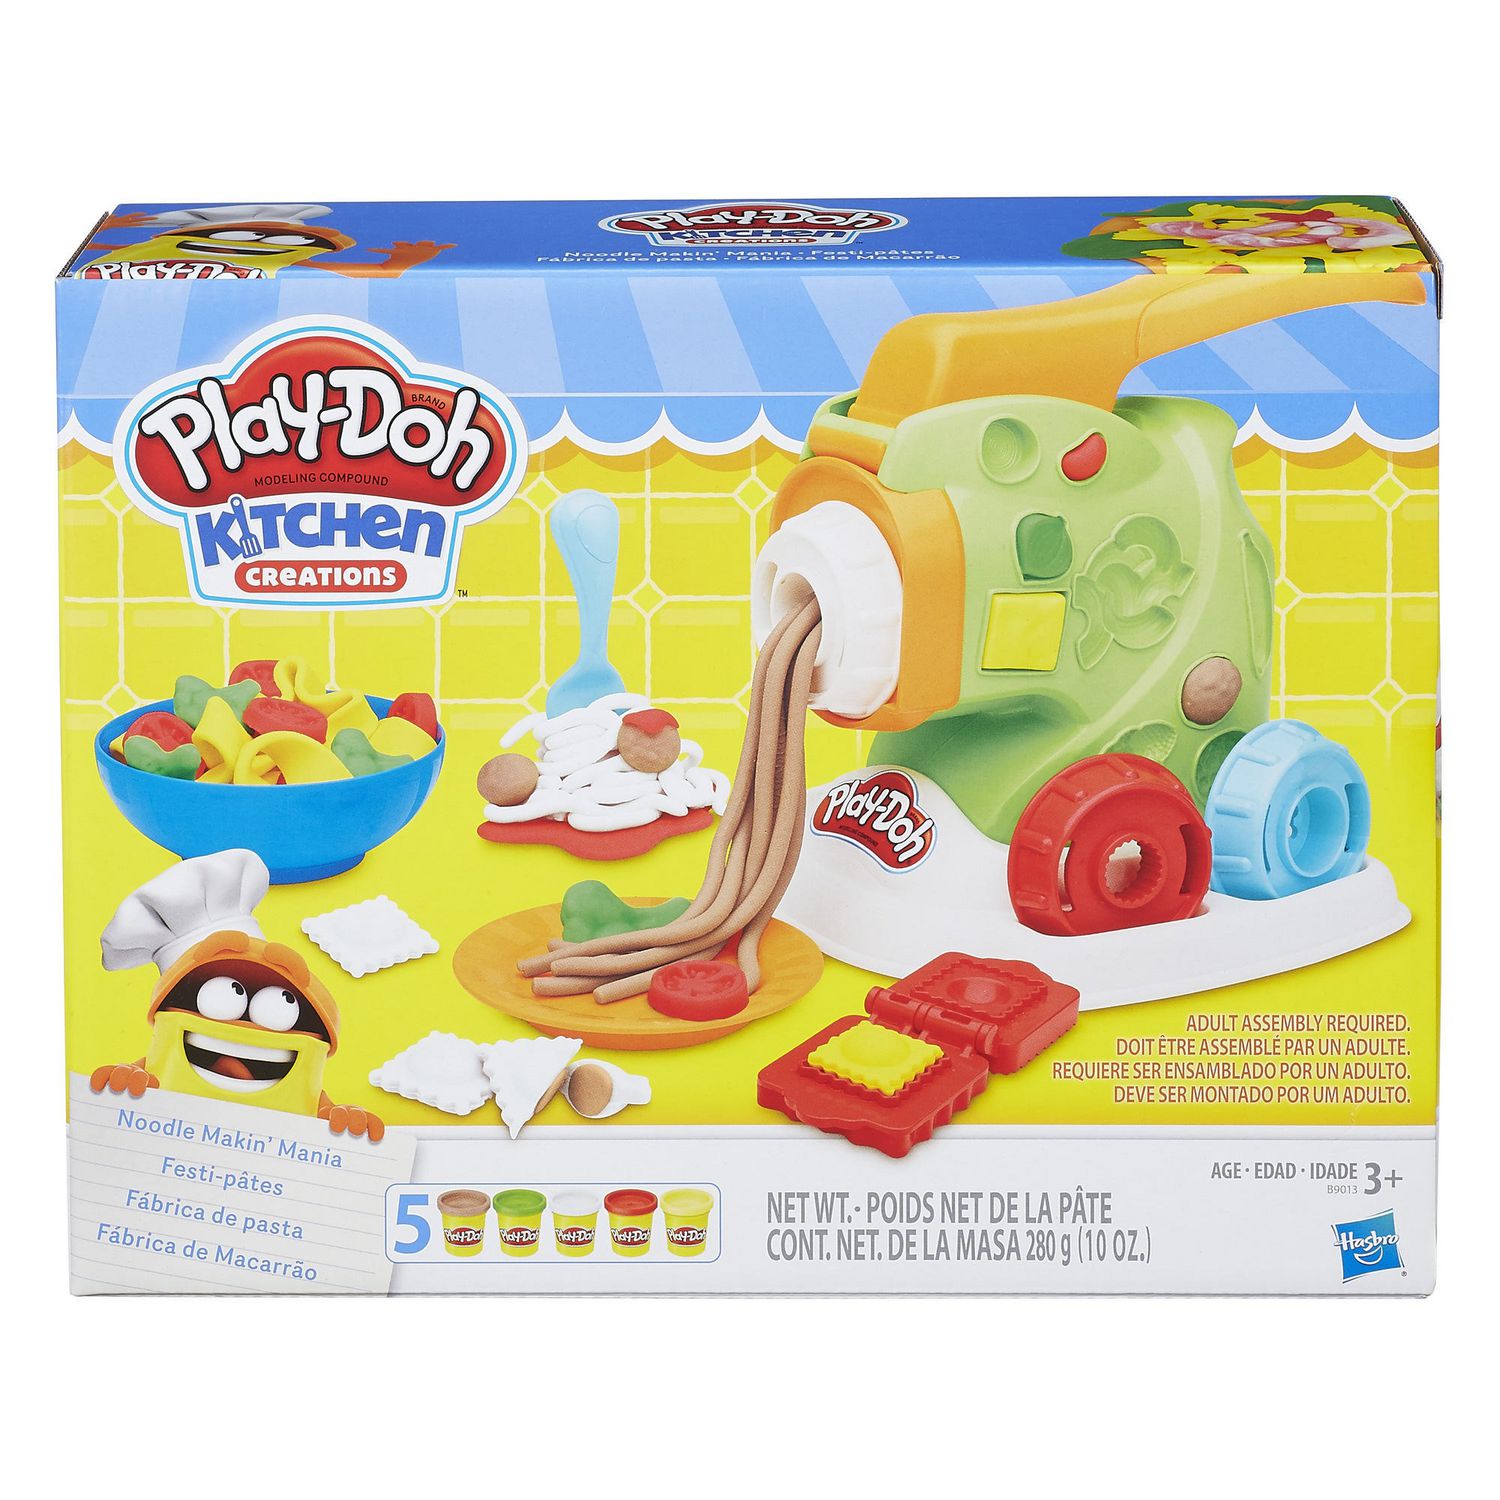 Promo Play-doh kit de pâte à modeler play-doh cookie creations chez Action